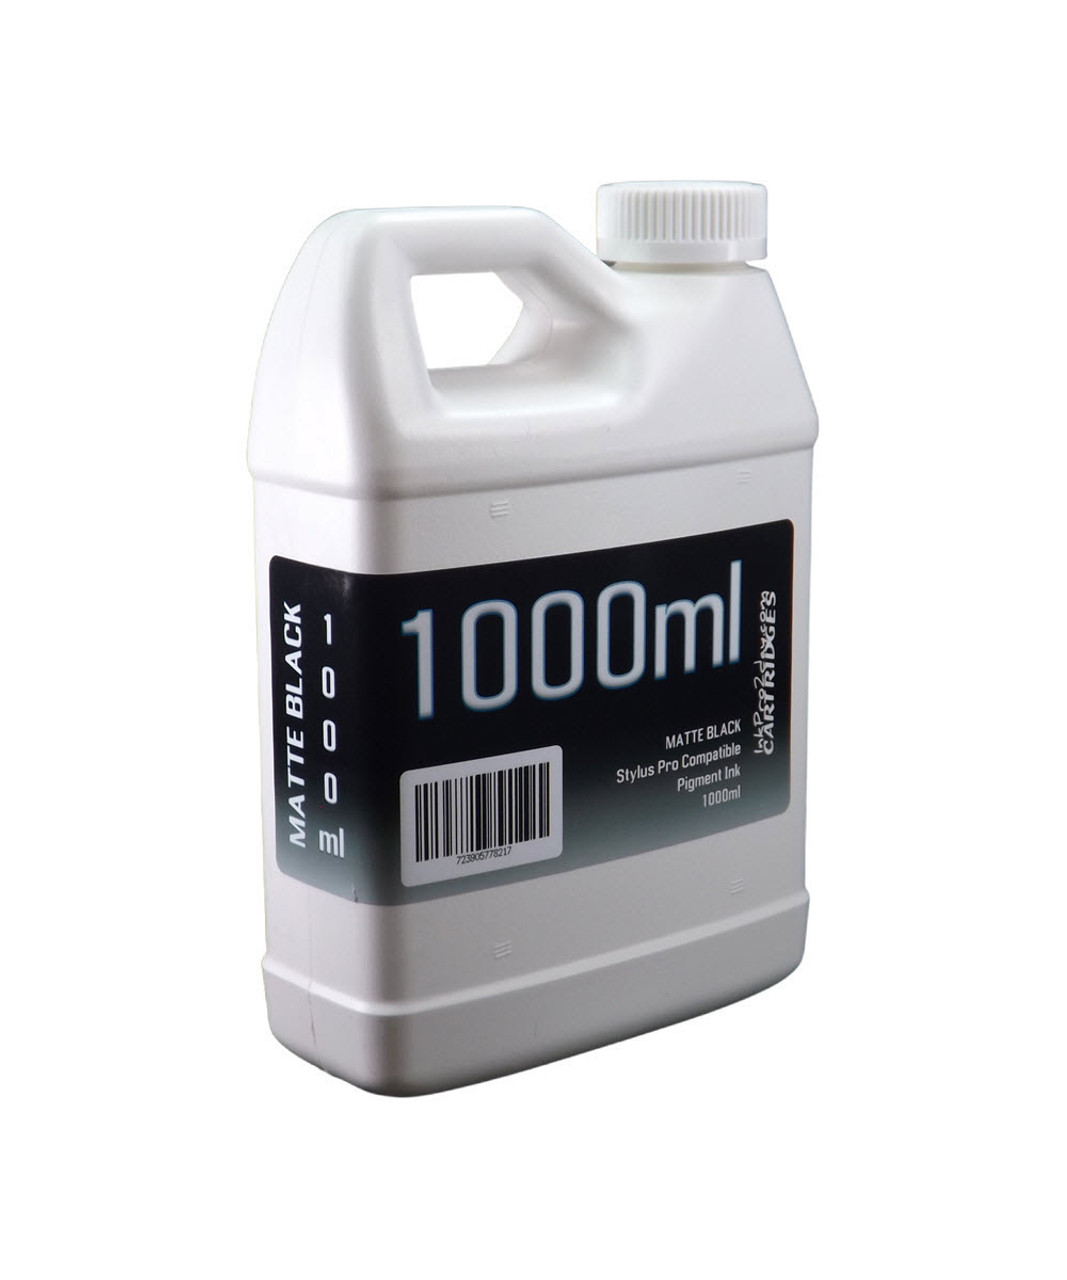 Matte Black 1000ml bottle compatible Pigment Ink for Epson SureColor T3000 T5000 T7000 Printers